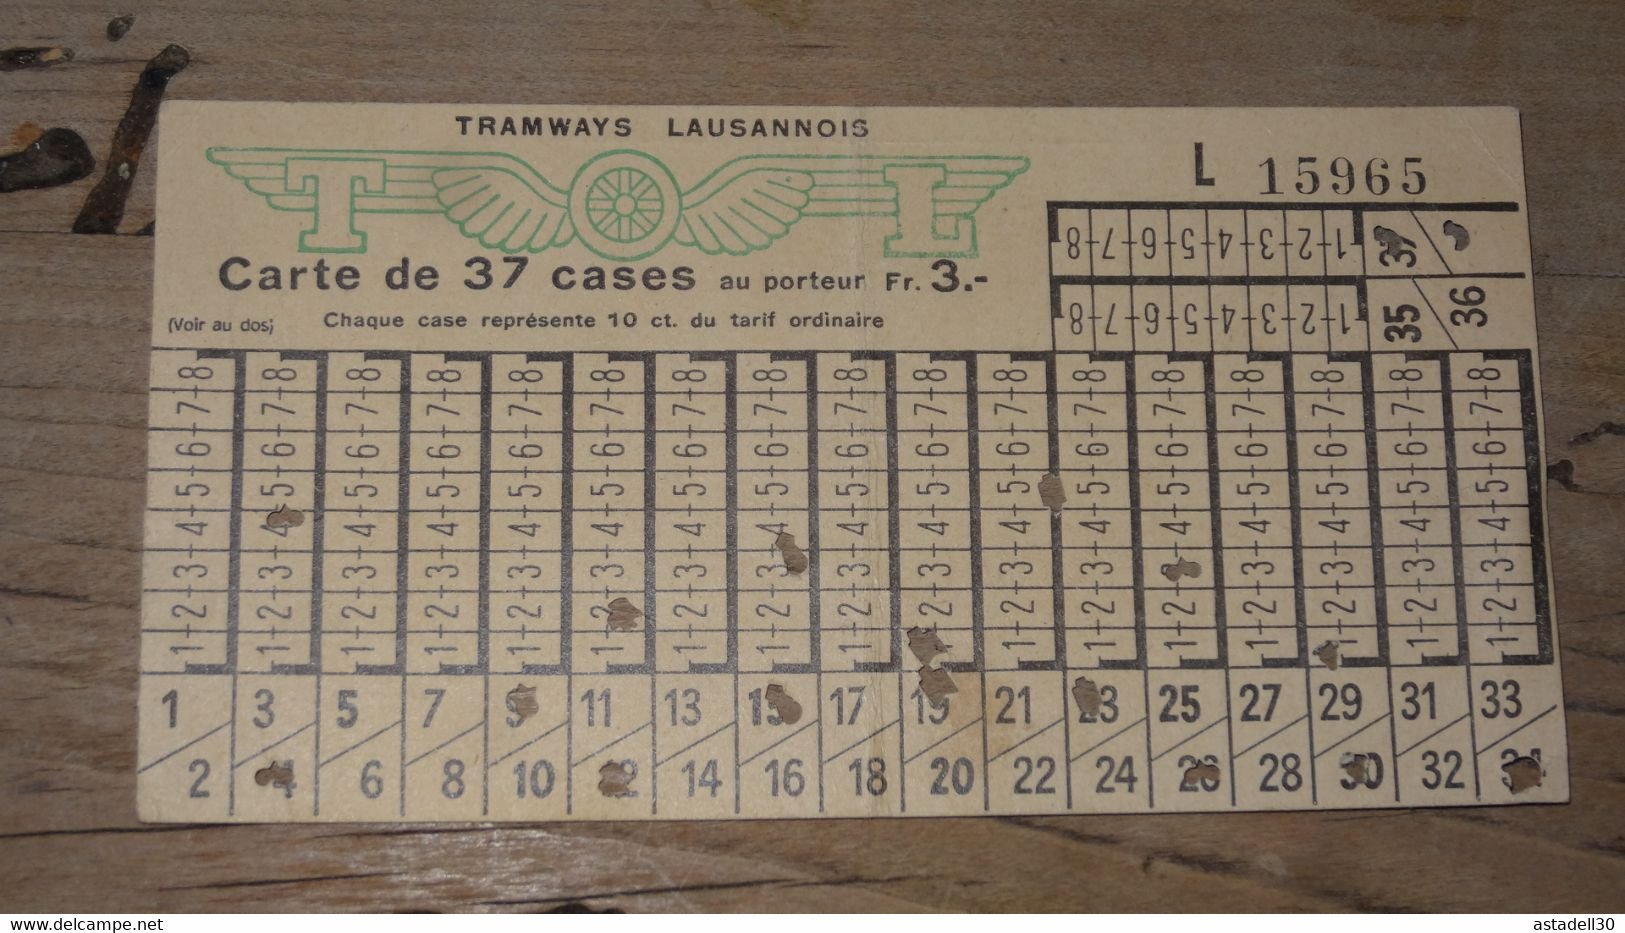 SUISSE - LAUSANNE, Carte De 37 Cases Tramway - 1957 ............. C- ..... E2-110 - Europe